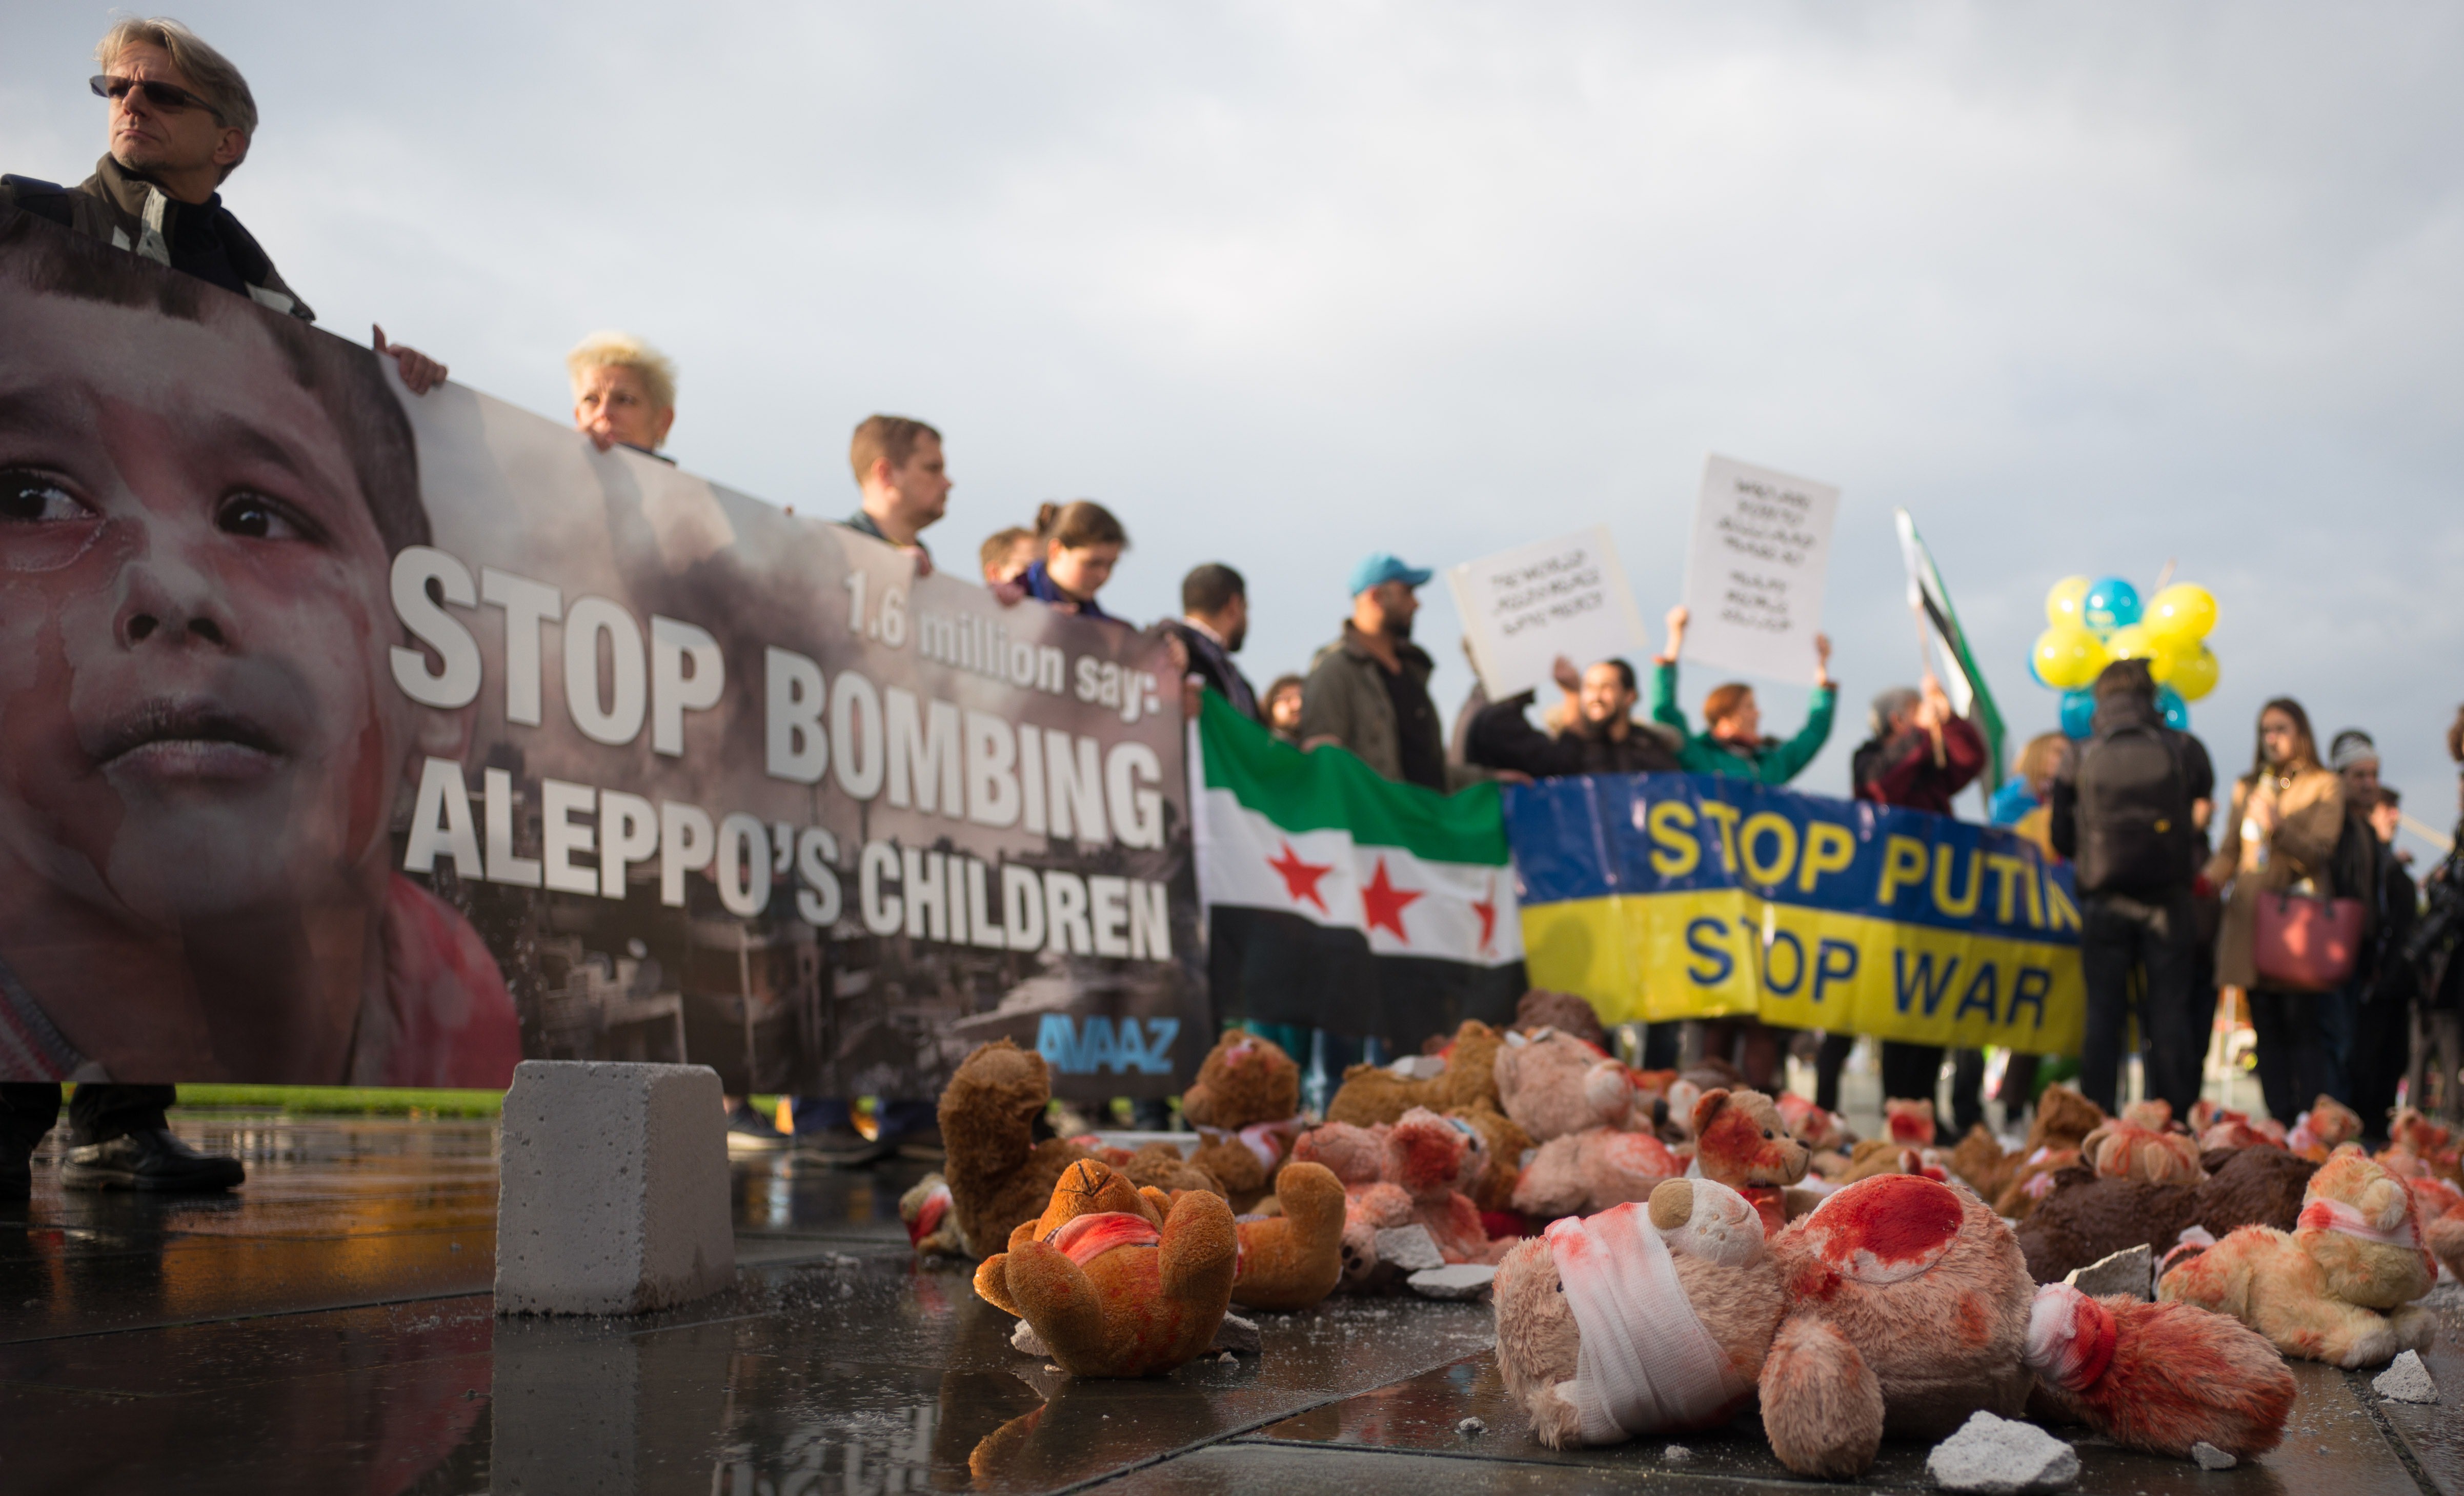 "Херр Путин, уезжай назад!" – украинские и сирийские демонстранты объединились и устроили антипутинскую акцию в Берлине (эксклюзивные фото)